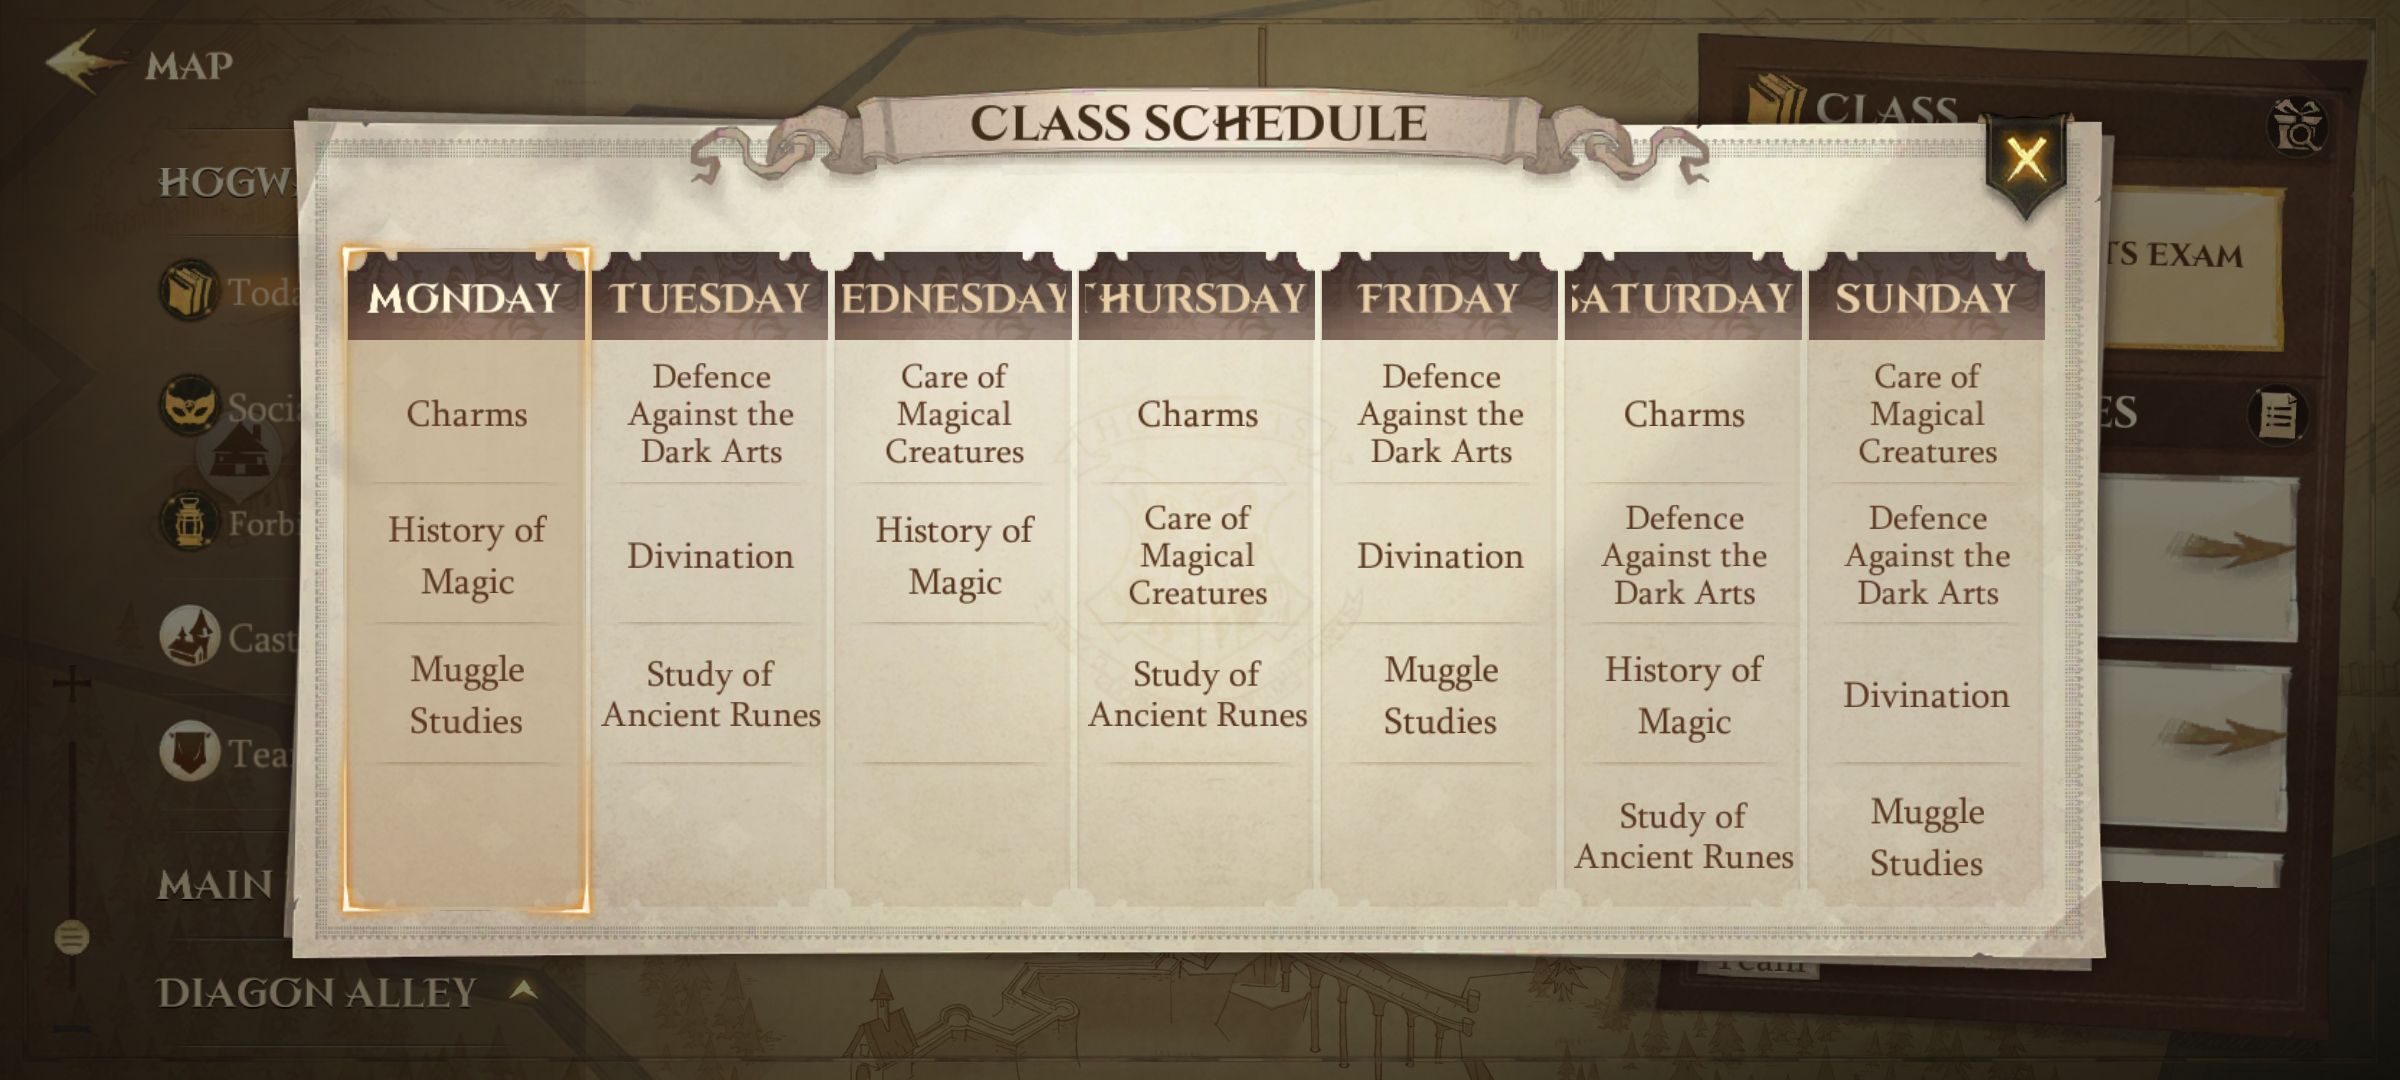 HPMA-class-schedule